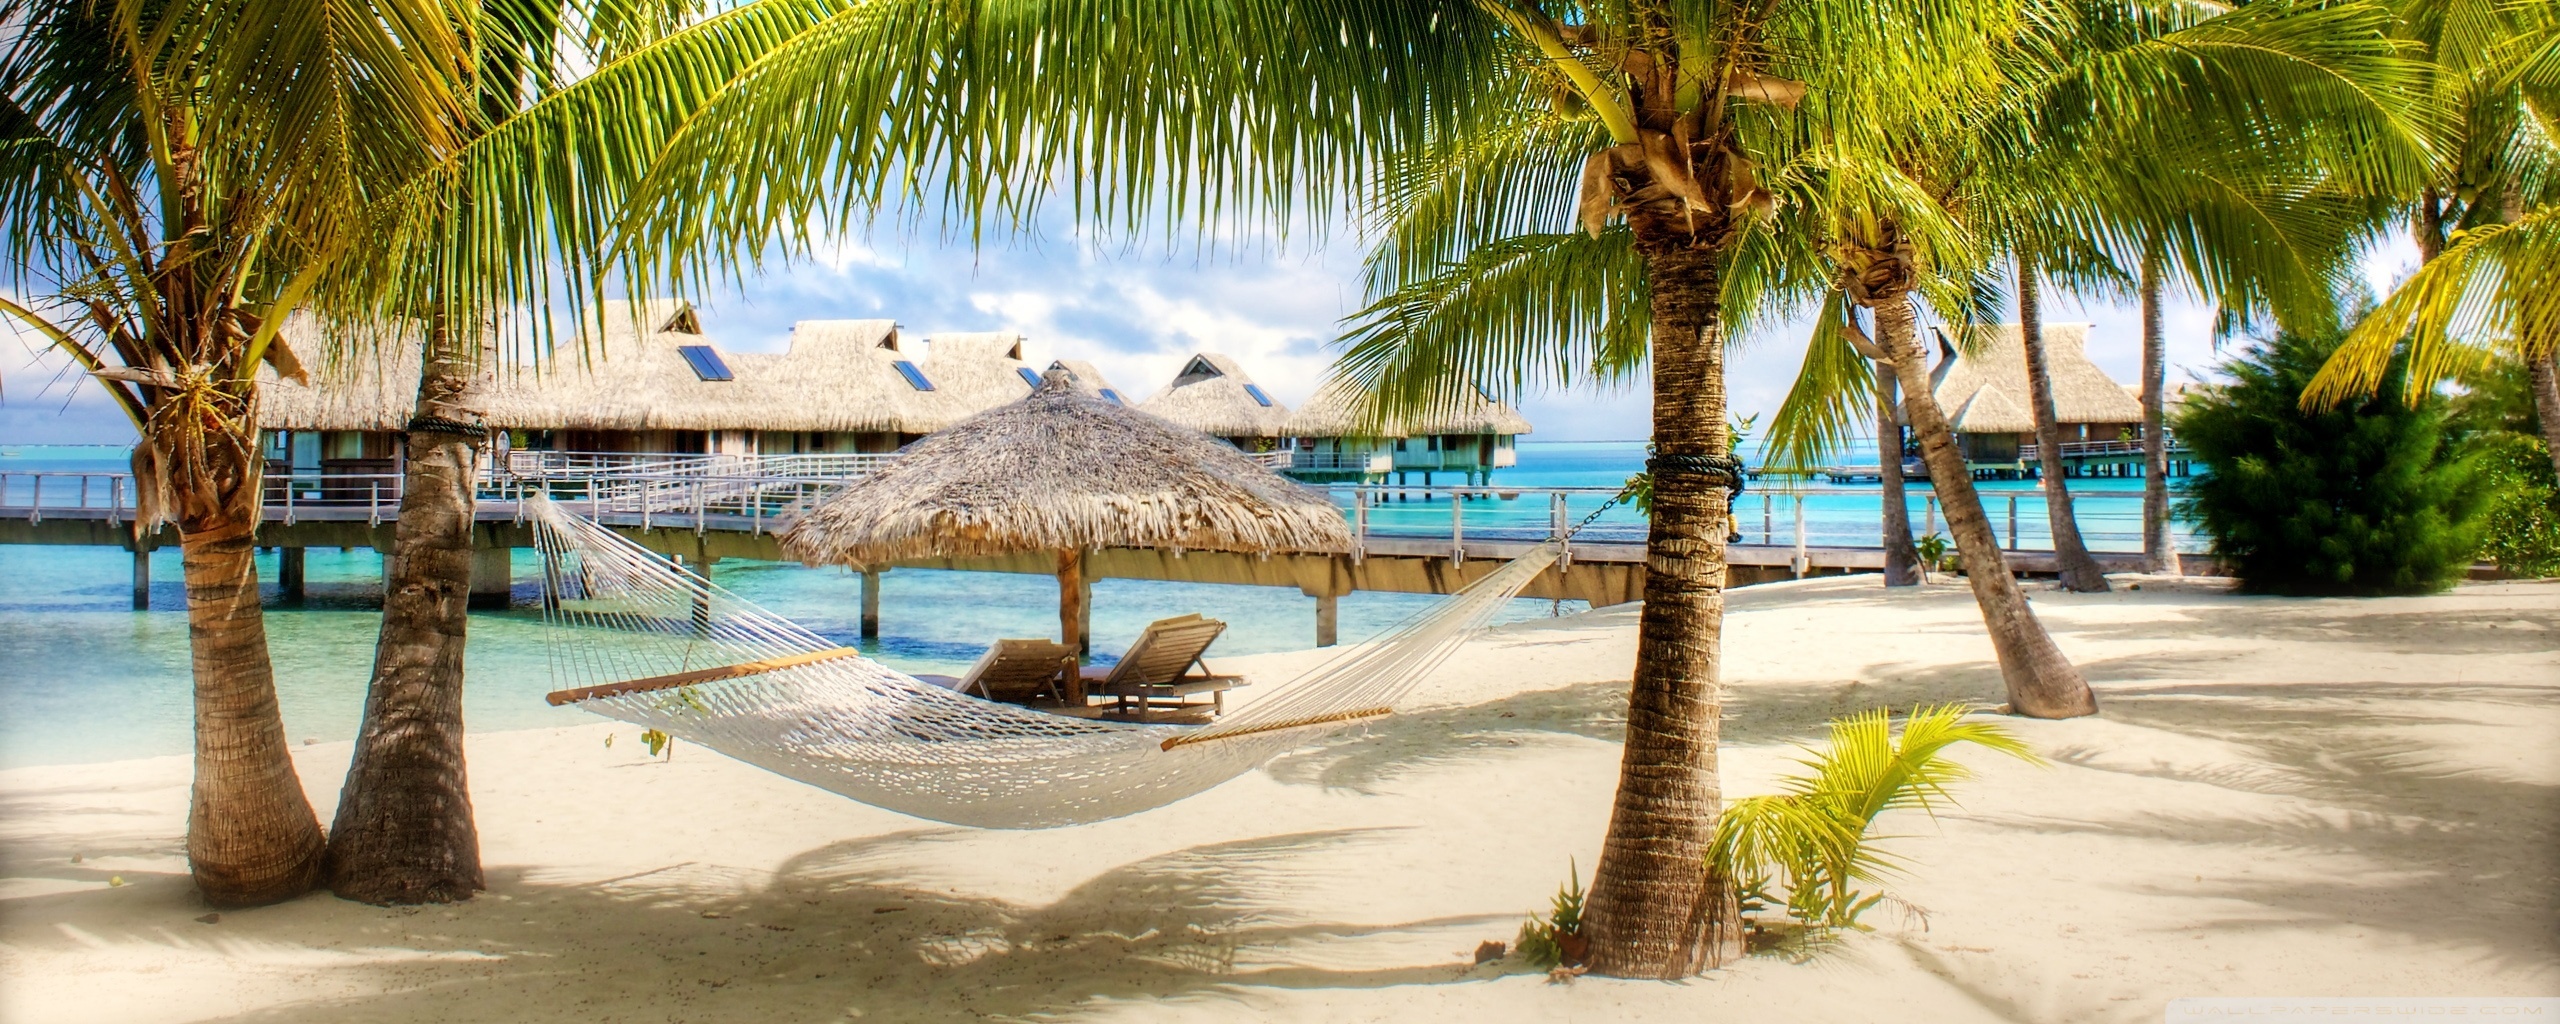 Tropical Beach Resort HD desktop wallpaper : High Definition ...